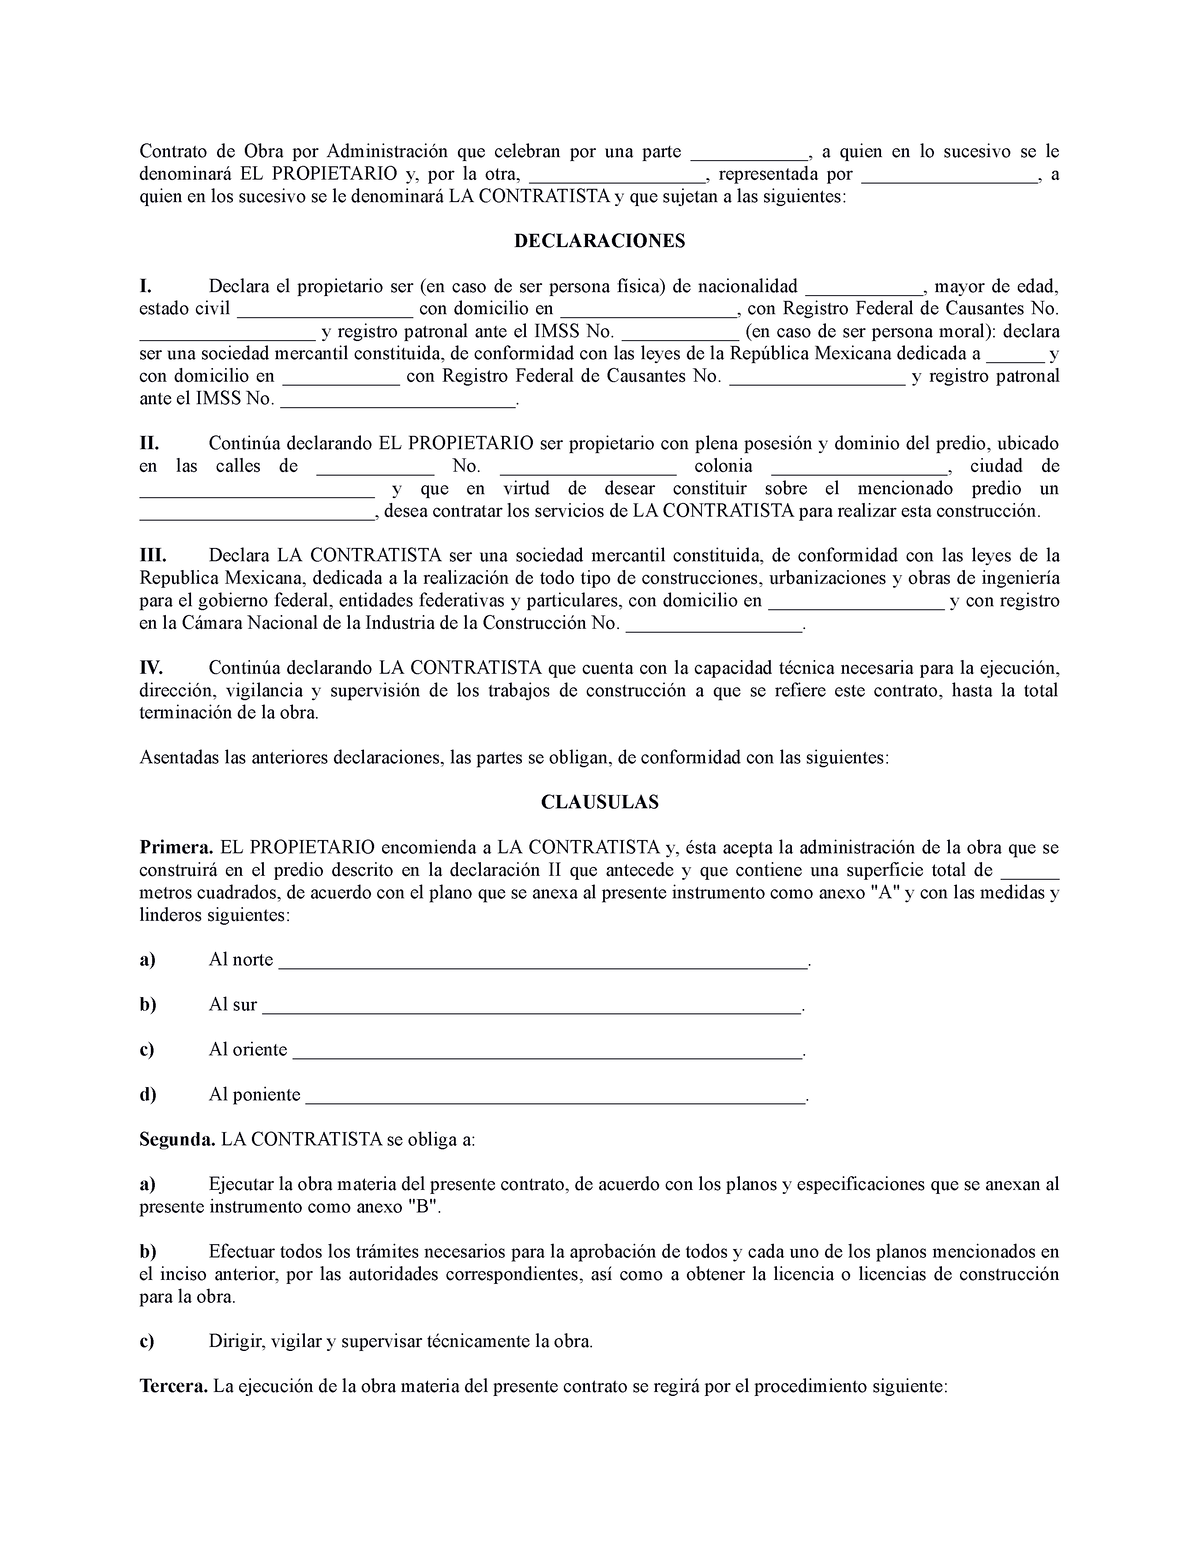 Contrato de administración de obra - Contrato de Obra por ...